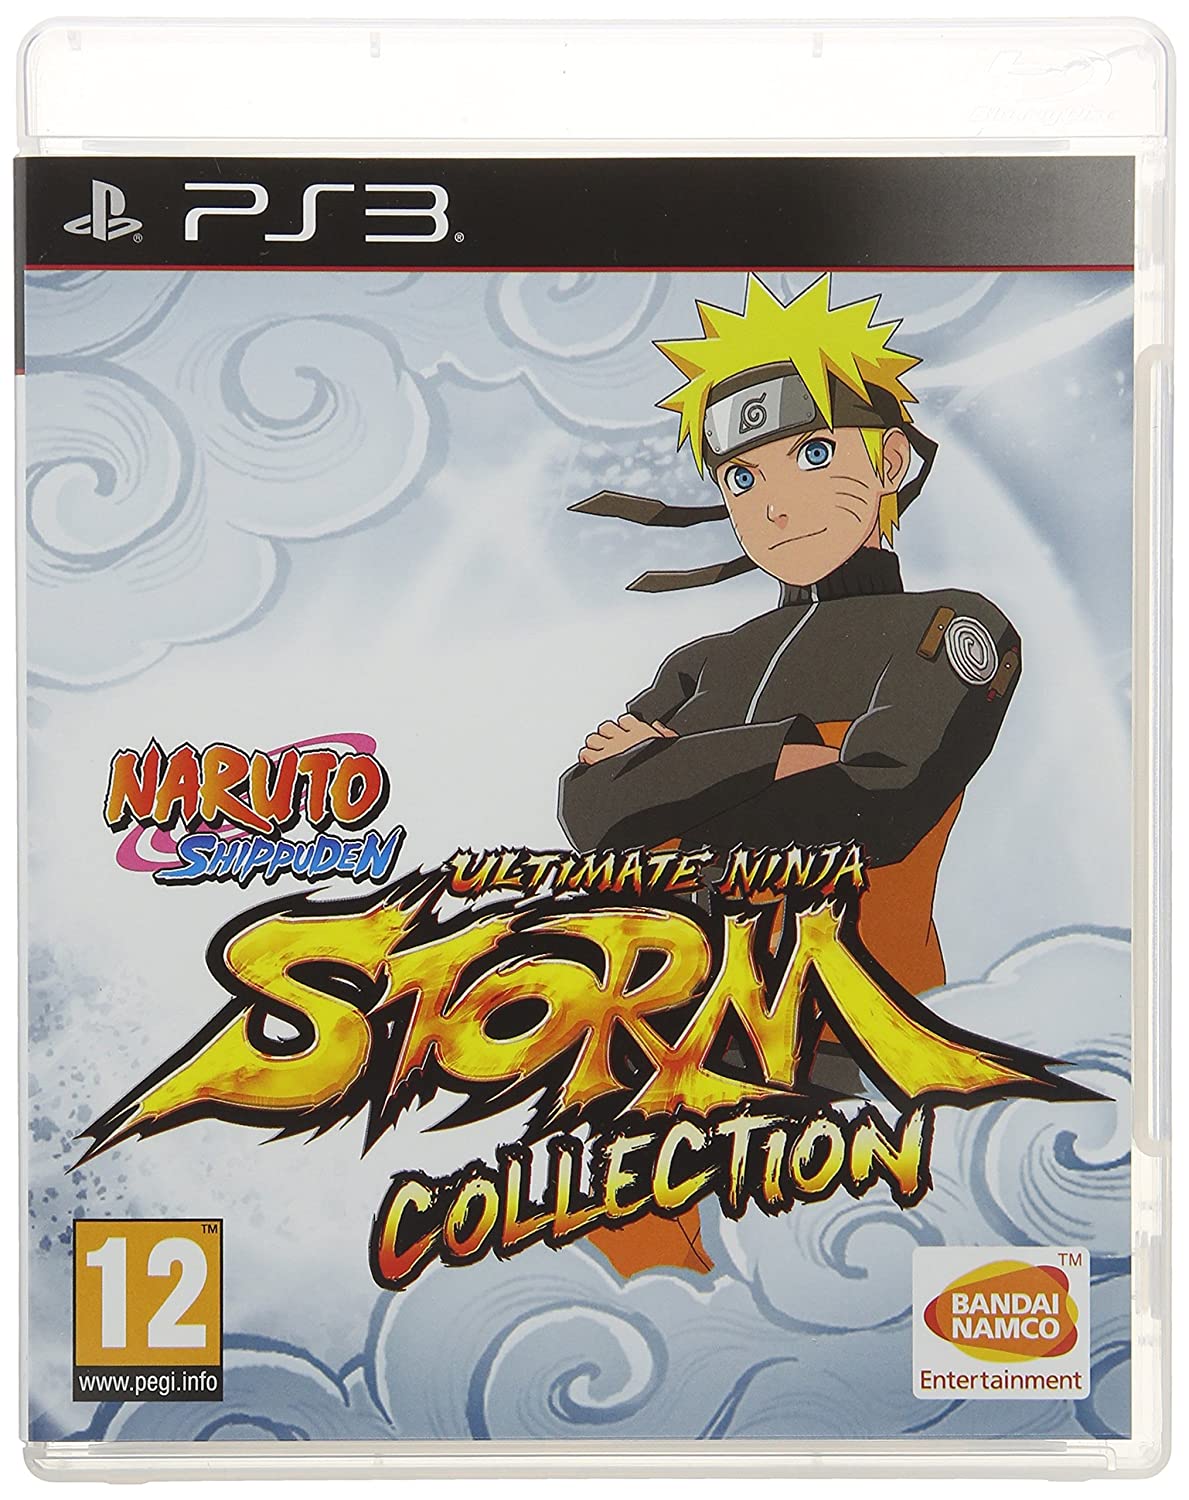 Naruto ultimate ninja storm